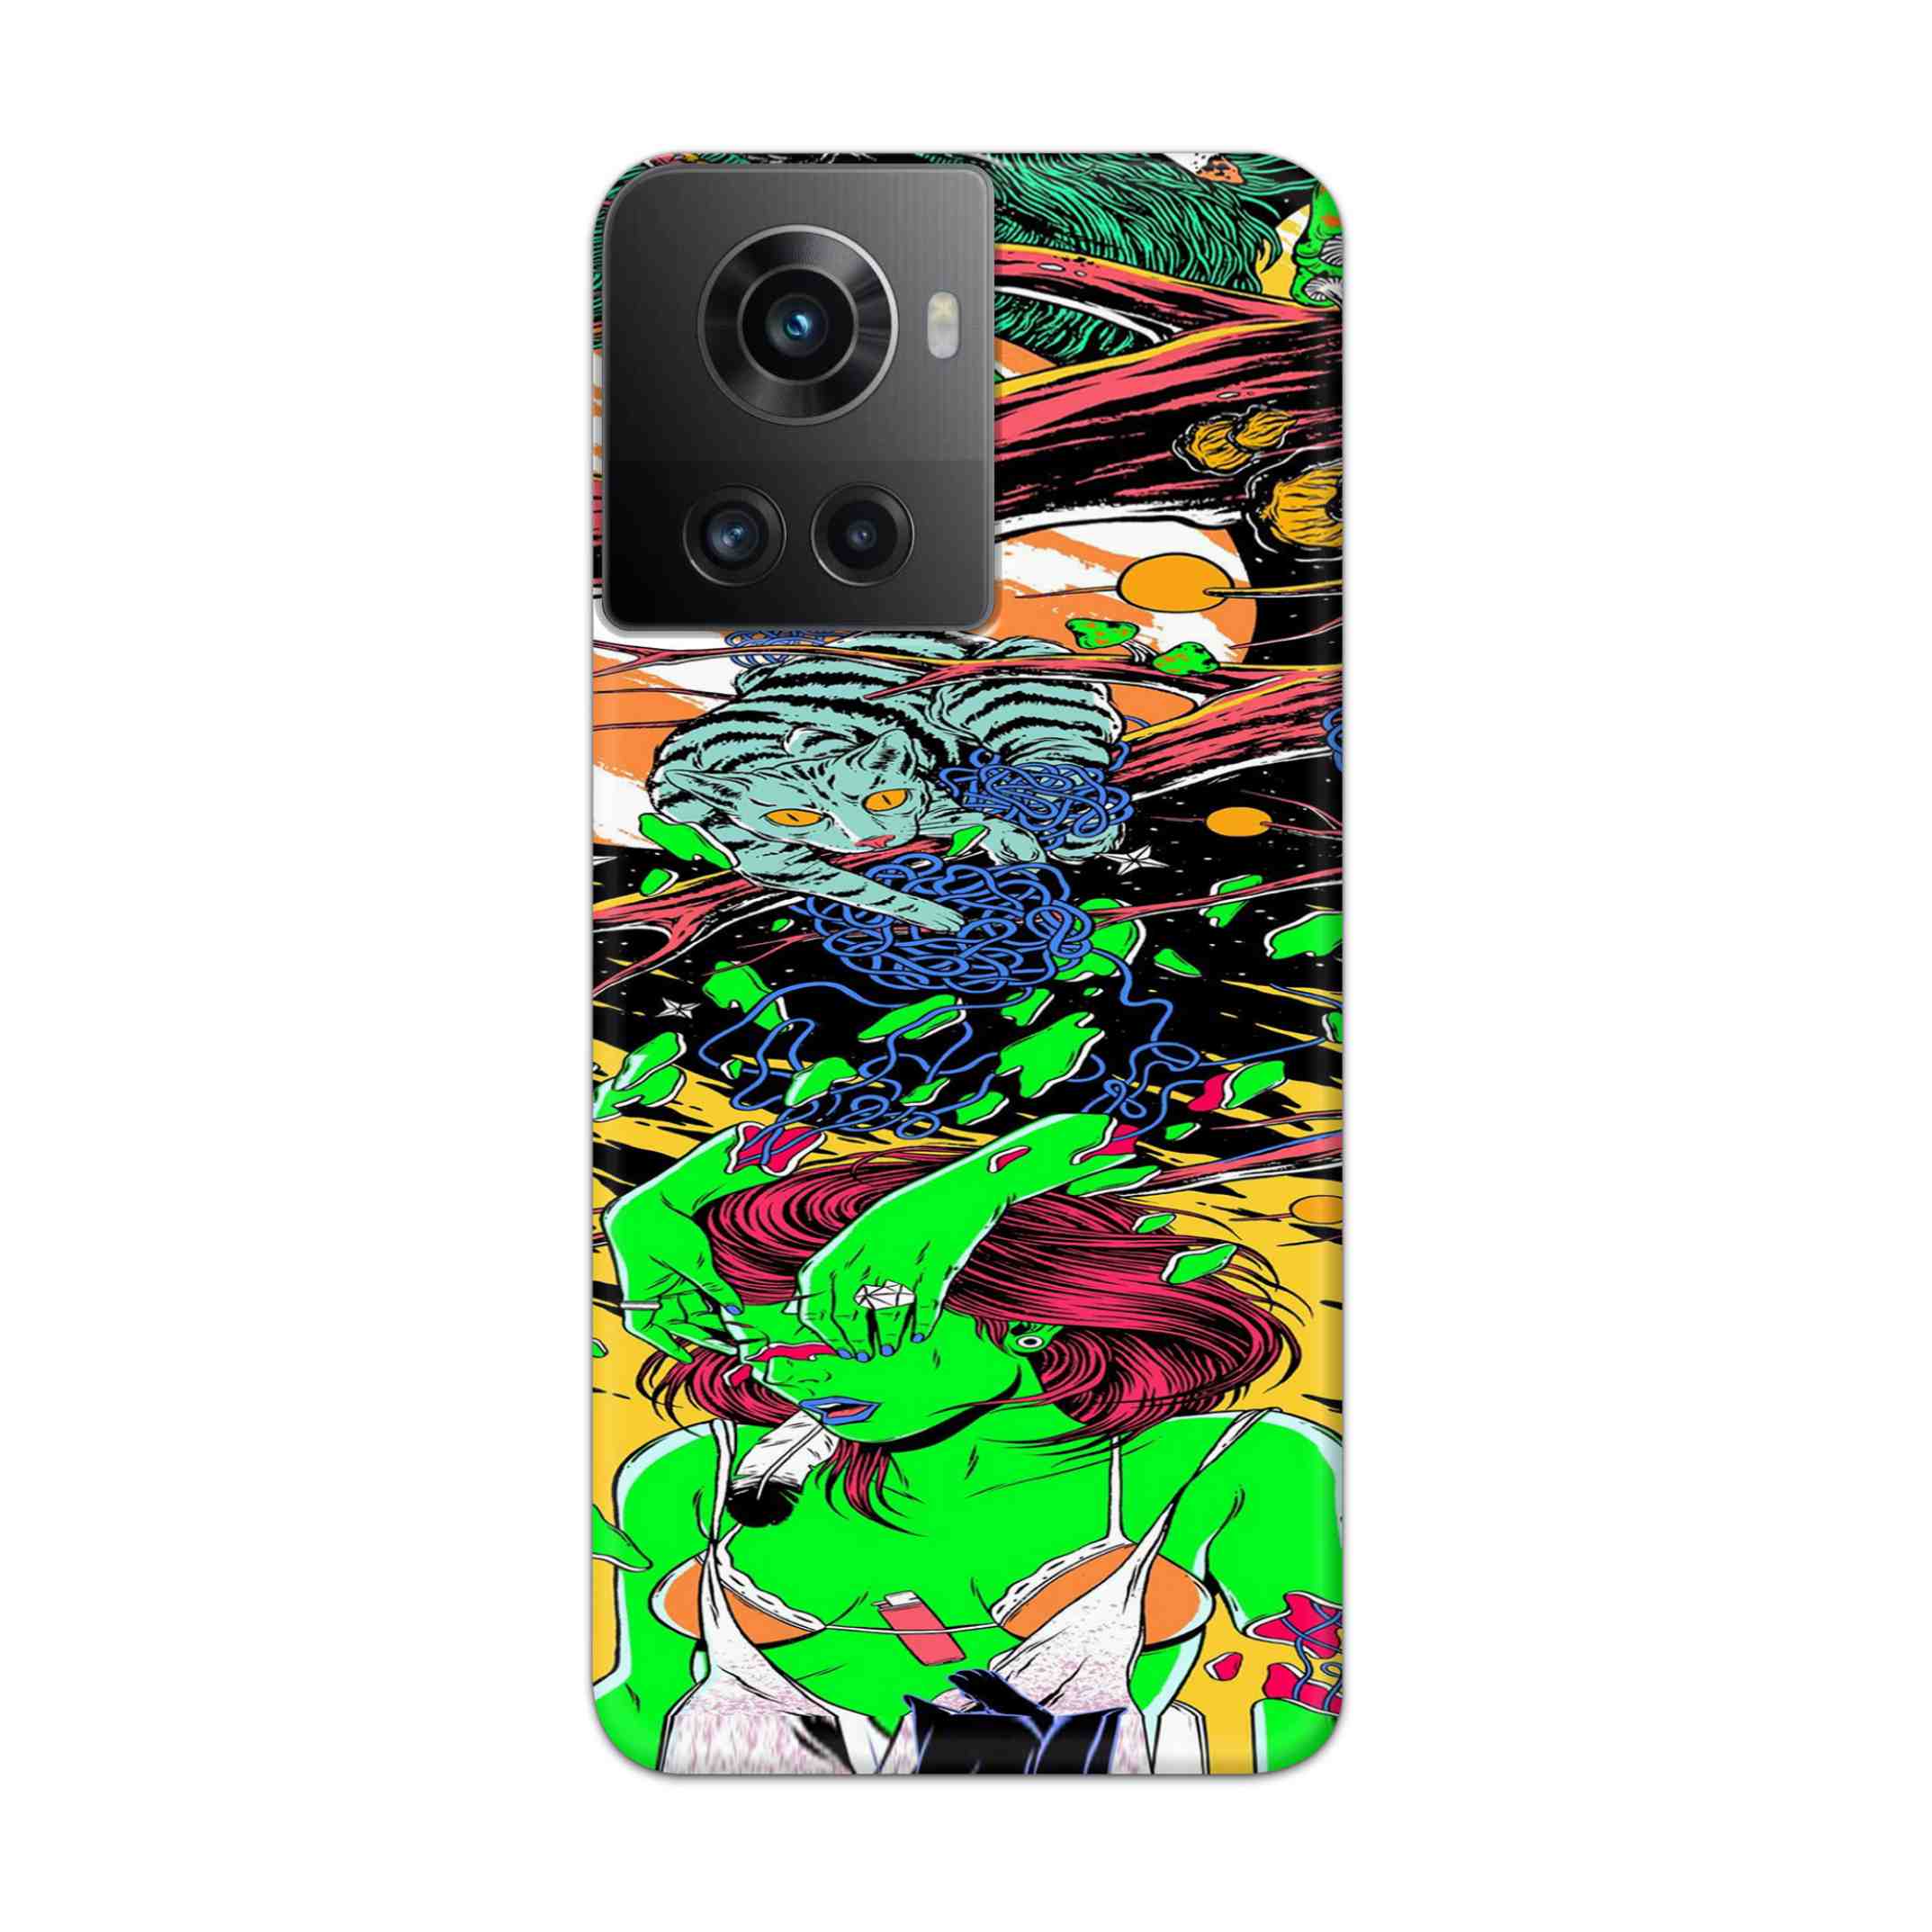 Buy Green Girl Art Hard Back Mobile Phone Case Cover For Oneplus 10R Online